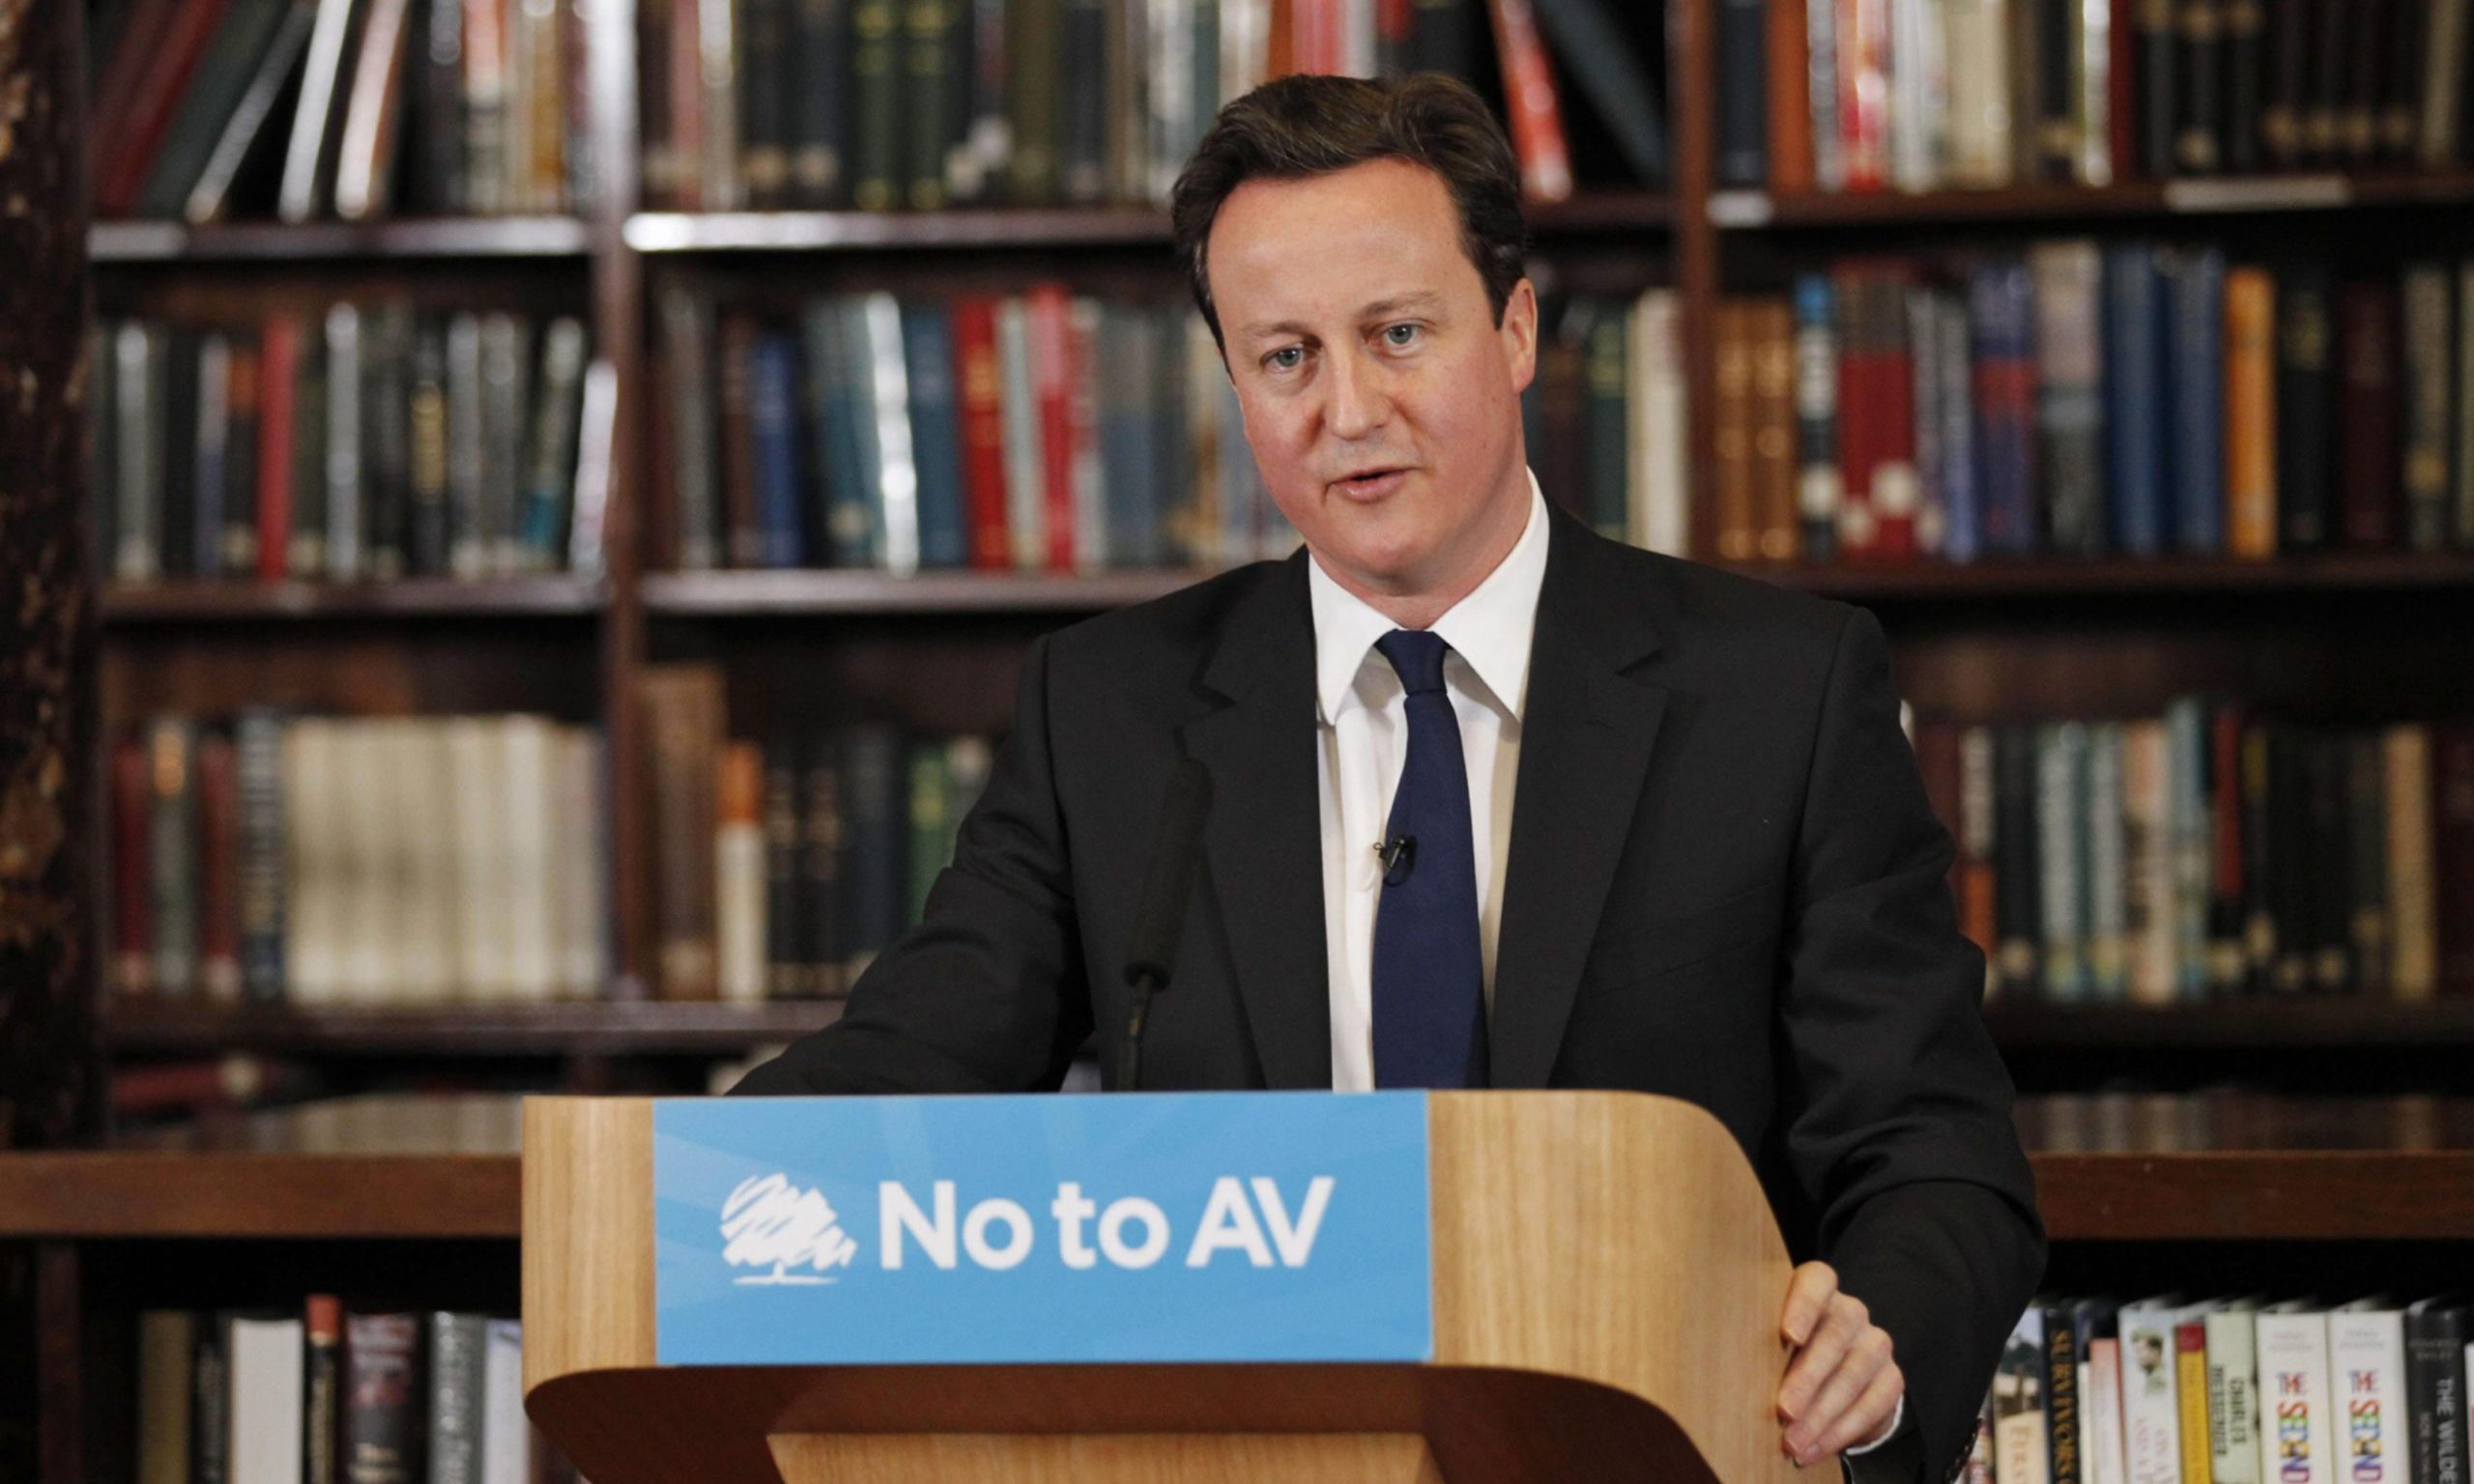 David Cameron at the lectern